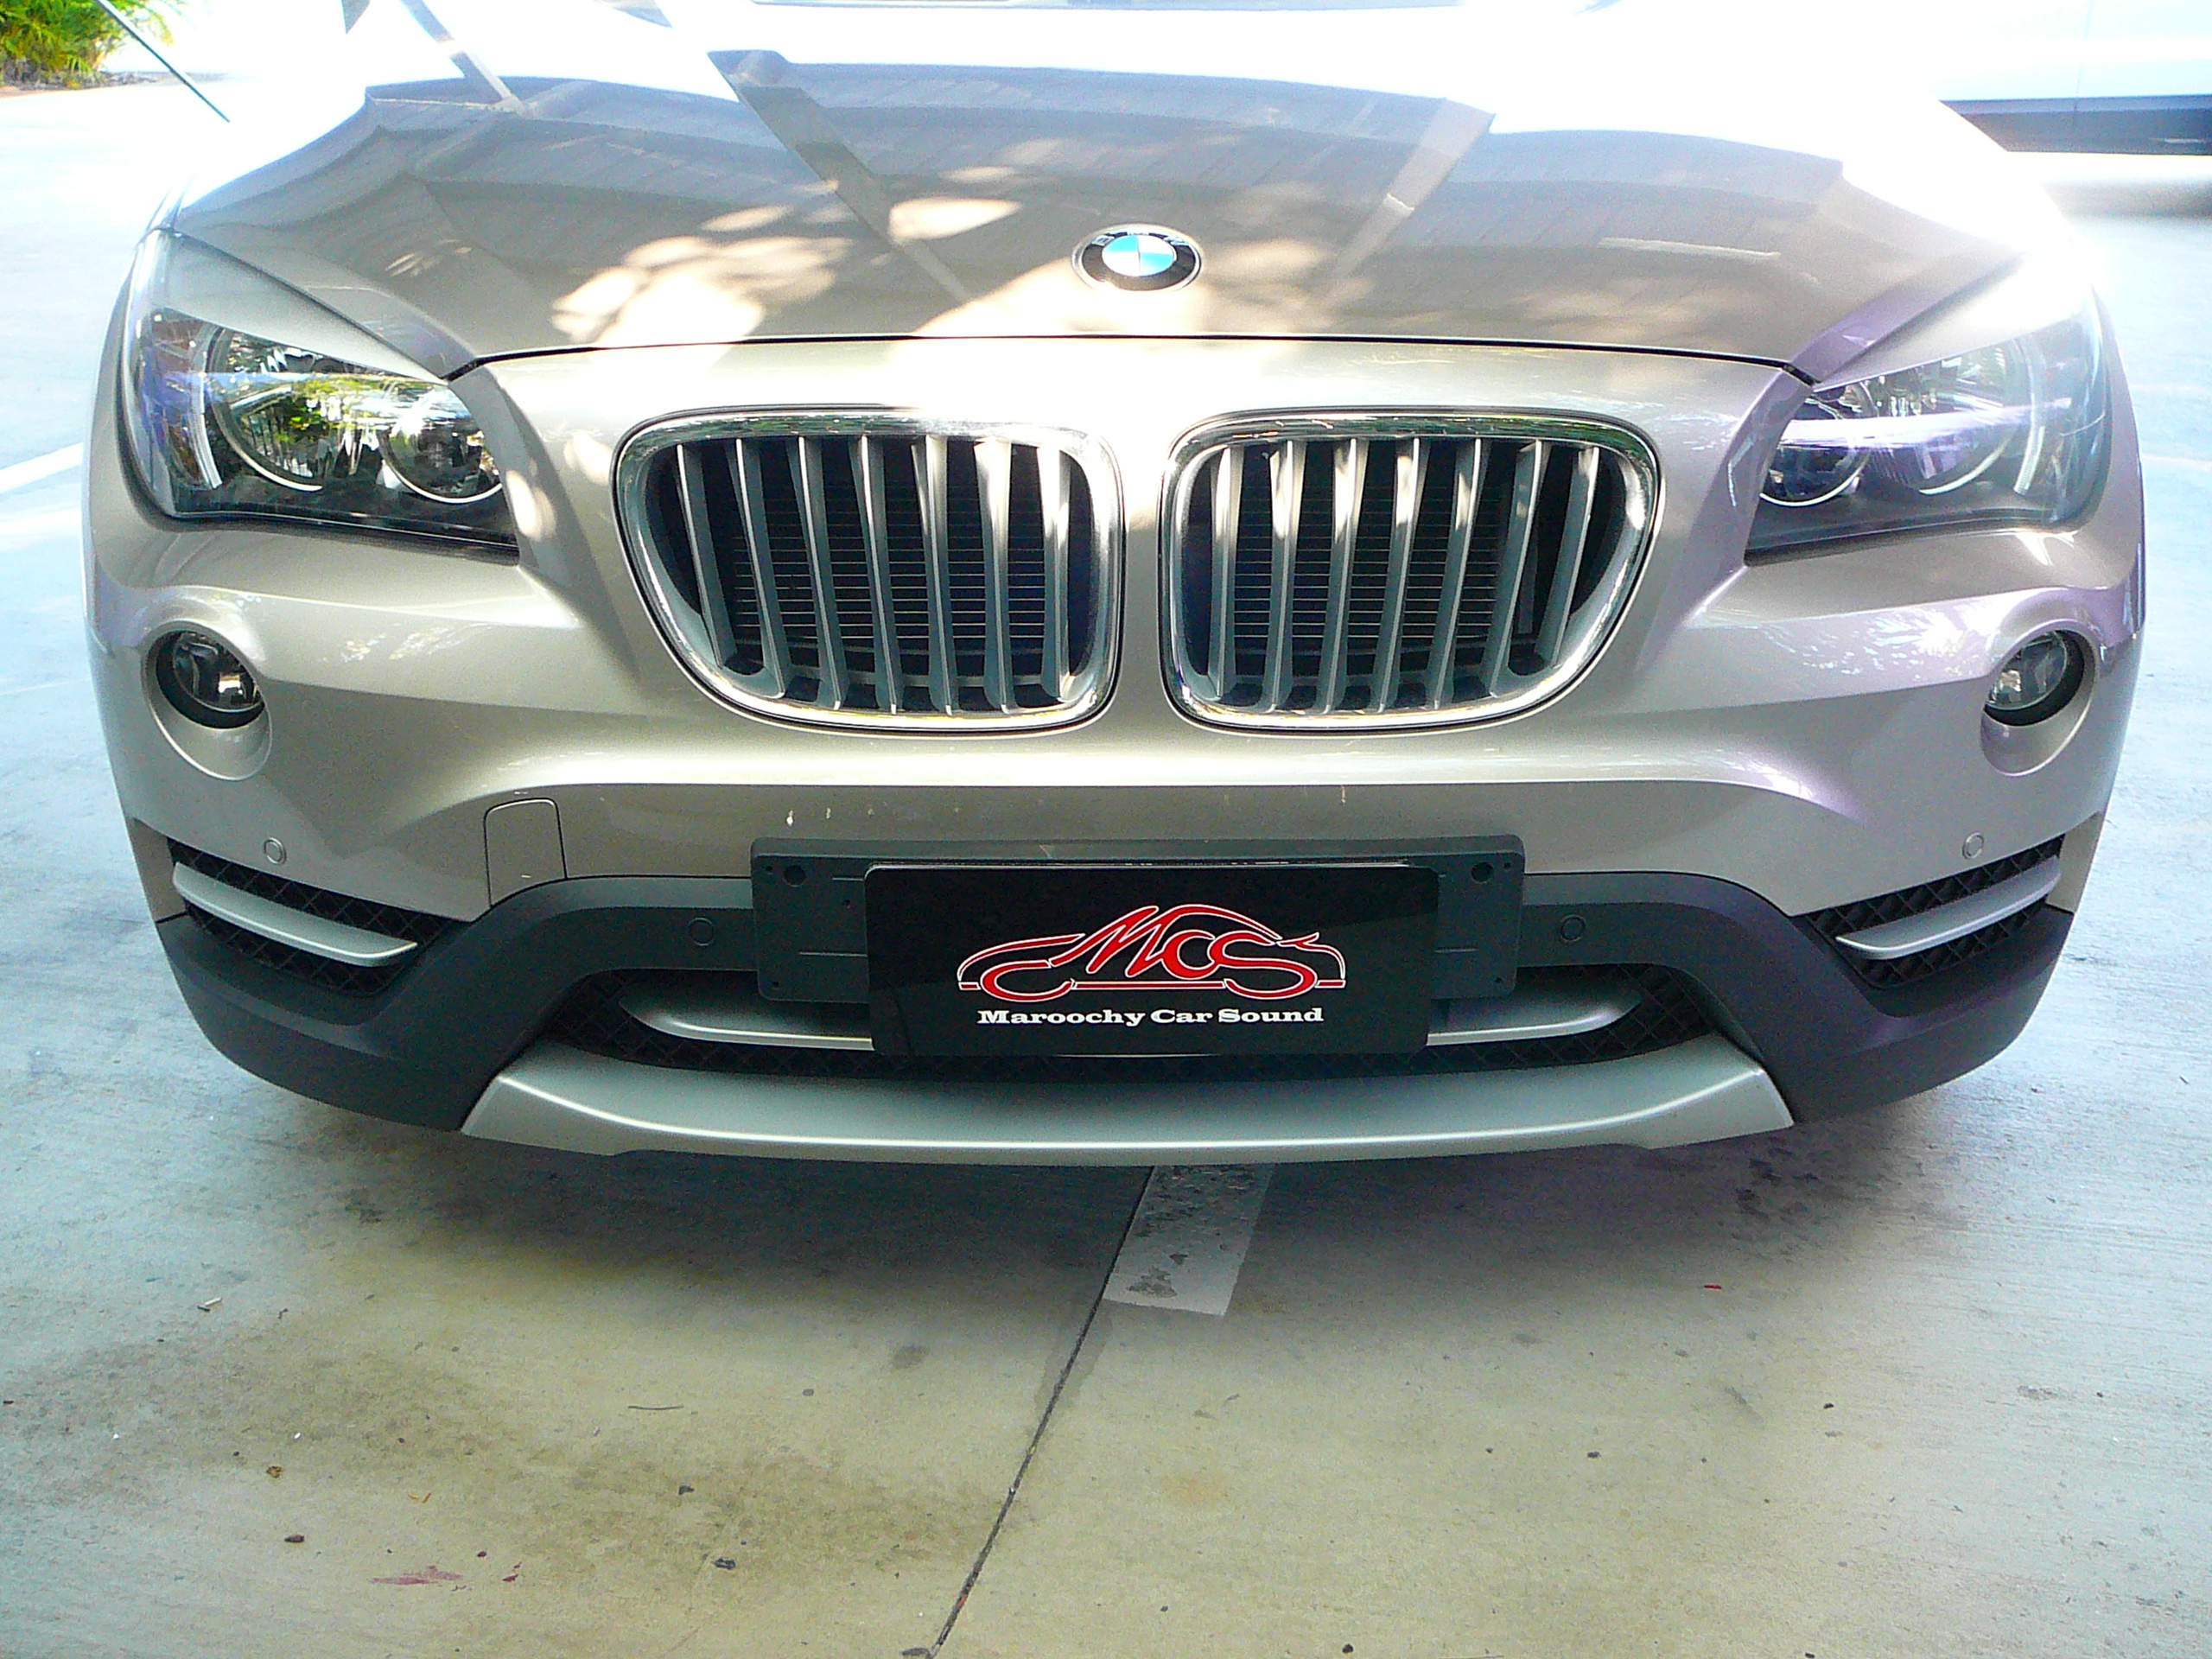 BMW X1 2013, Front Parking Sensor System